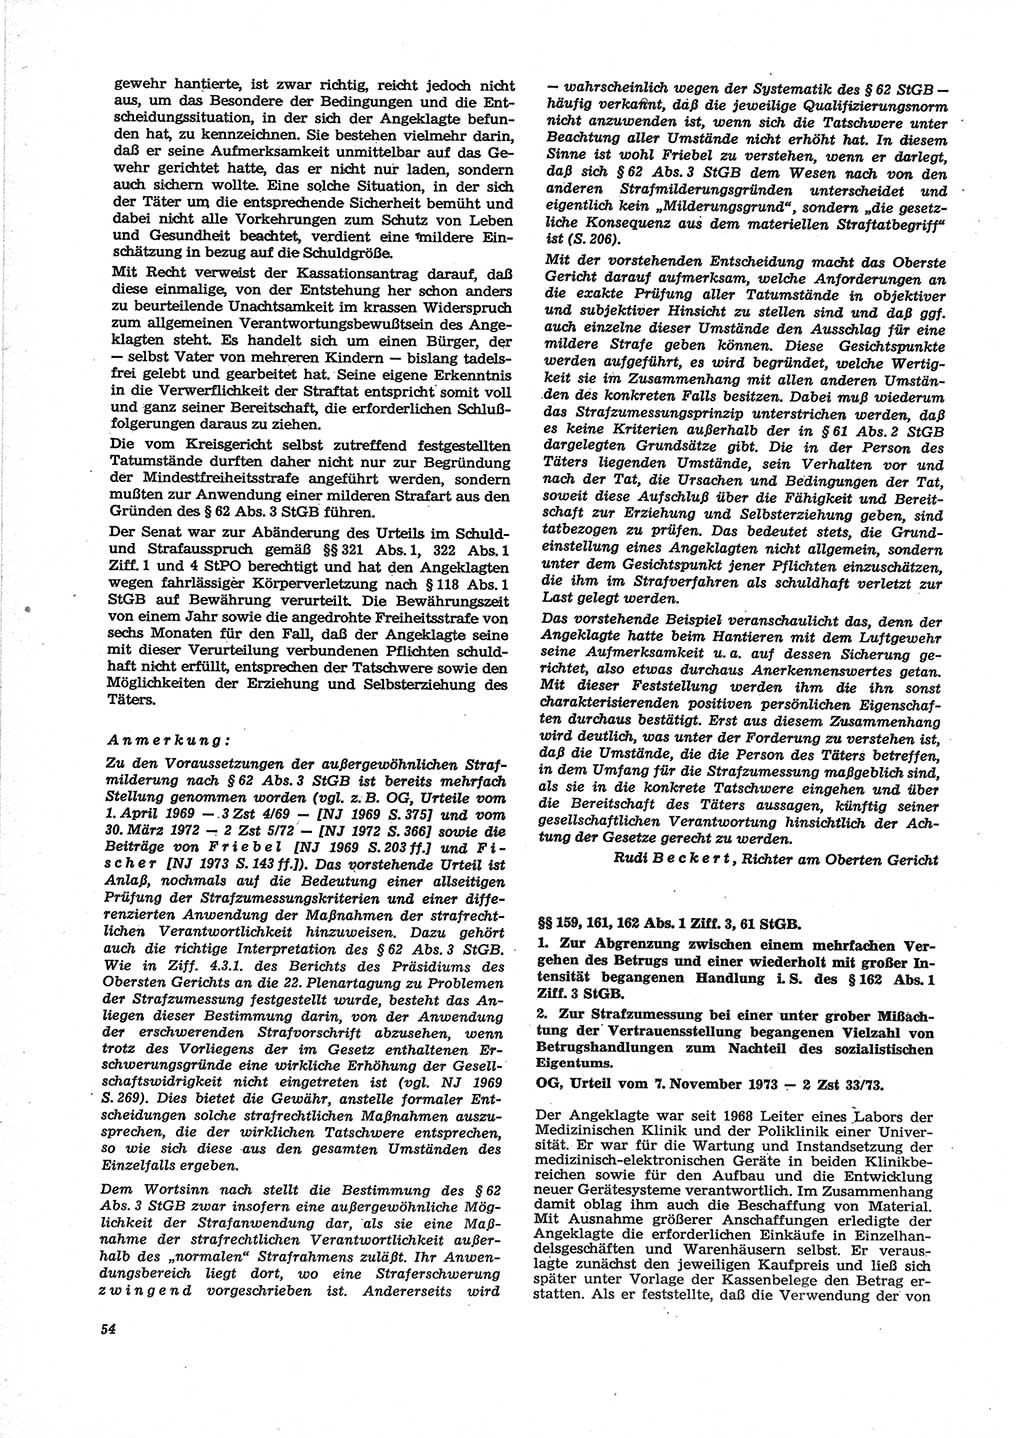 Neue Justiz (NJ), Zeitschrift für Recht und Rechtswissenschaft [Deutsche Demokratische Republik (DDR)], 28. Jahrgang 1974, Seite 54 (NJ DDR 1974, S. 54)